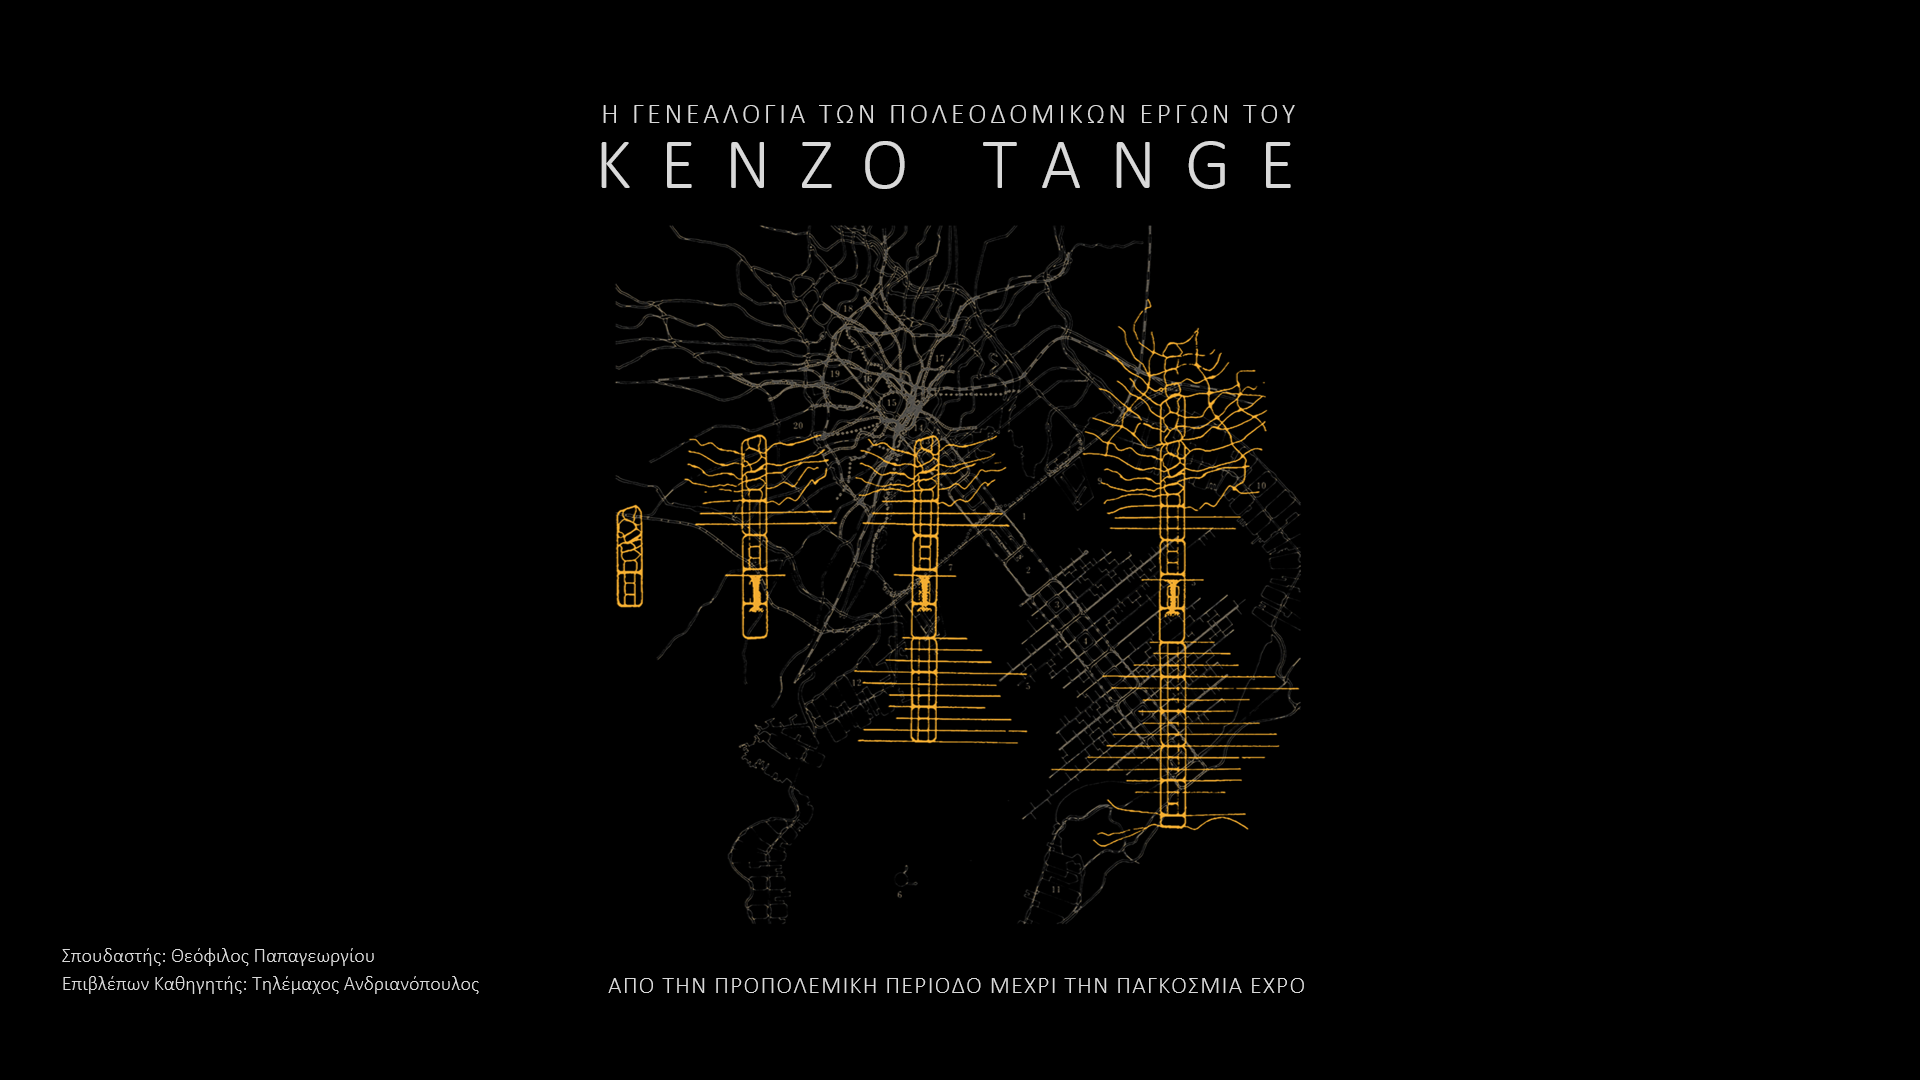 Η Γενεαλογία των πολεοδομικών έργων του Kenzo Tange: Από την προπολεμική περίοδο μέχρι την παγκόσμια EXPO